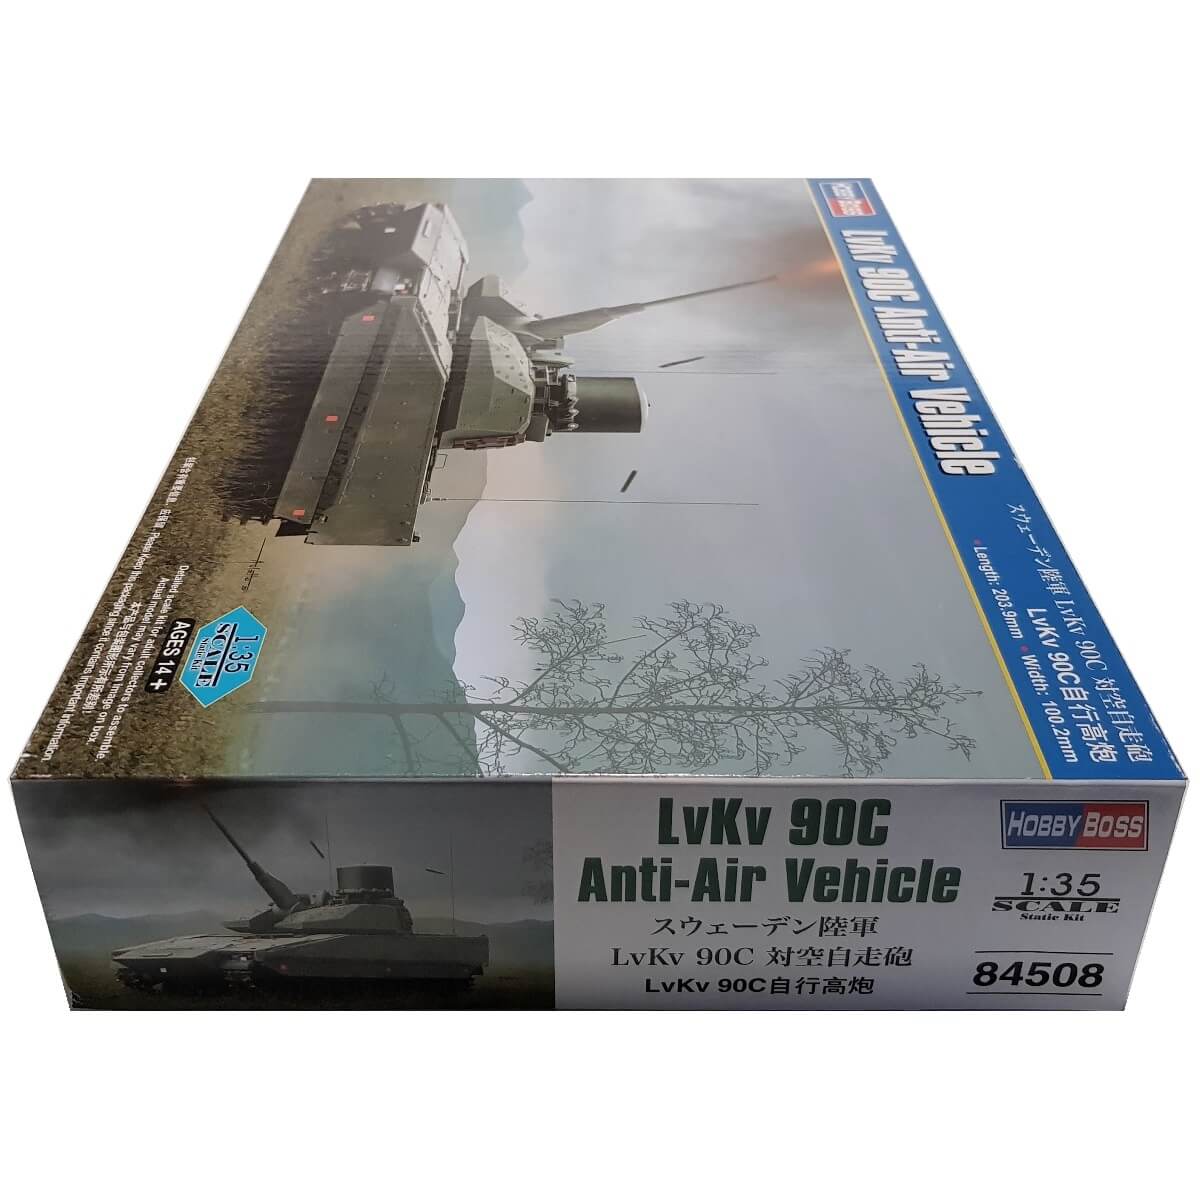 1:35 LvKv 90C Anti-Air Vehicle - HOBBY BOSS